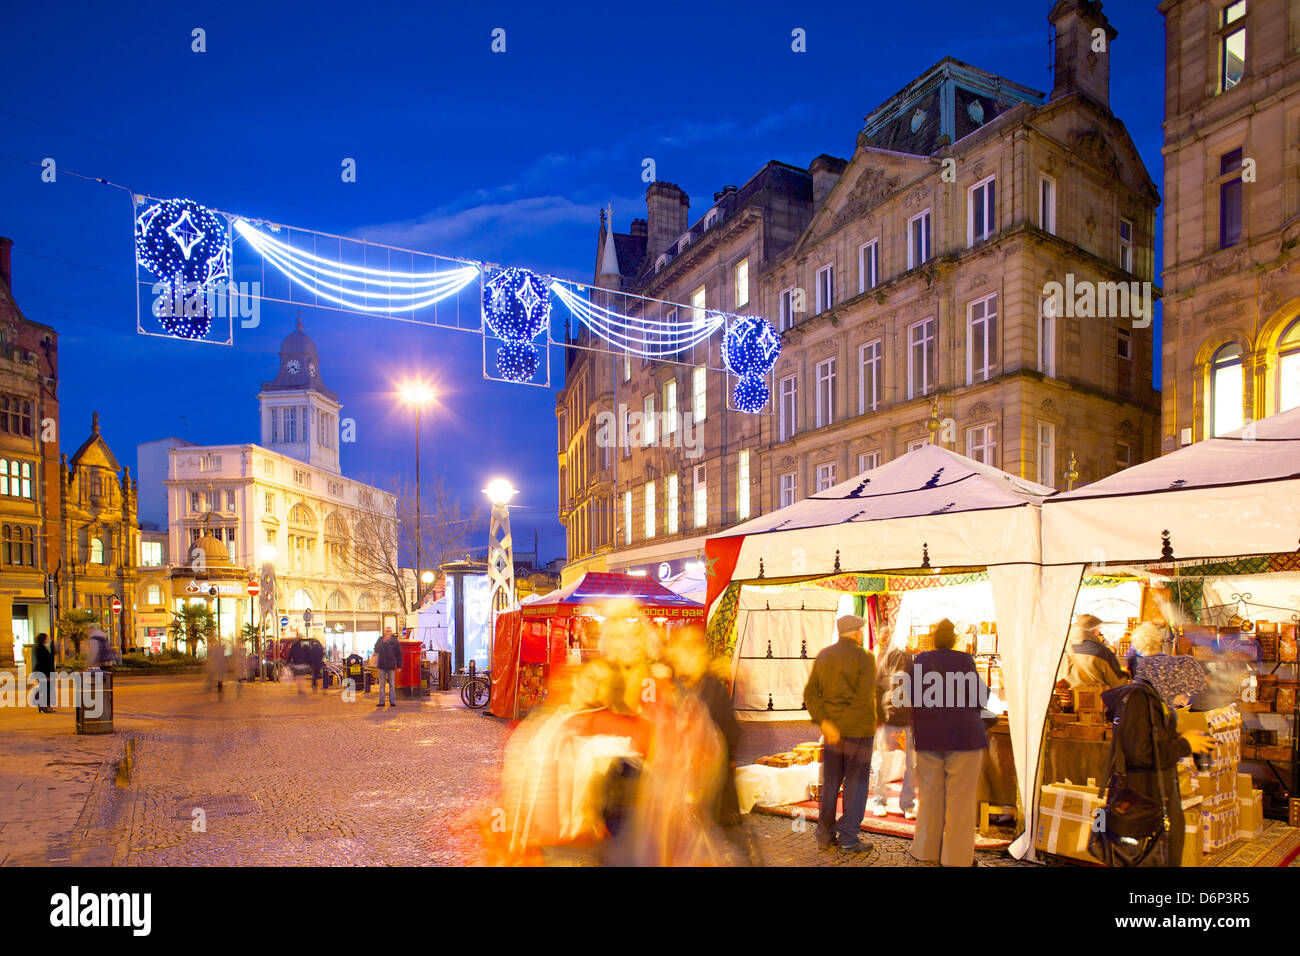 Christmas Market, Sheffield, South Yorkshire, Yorkshire, England, United Kingdom, Europe Stock Photo